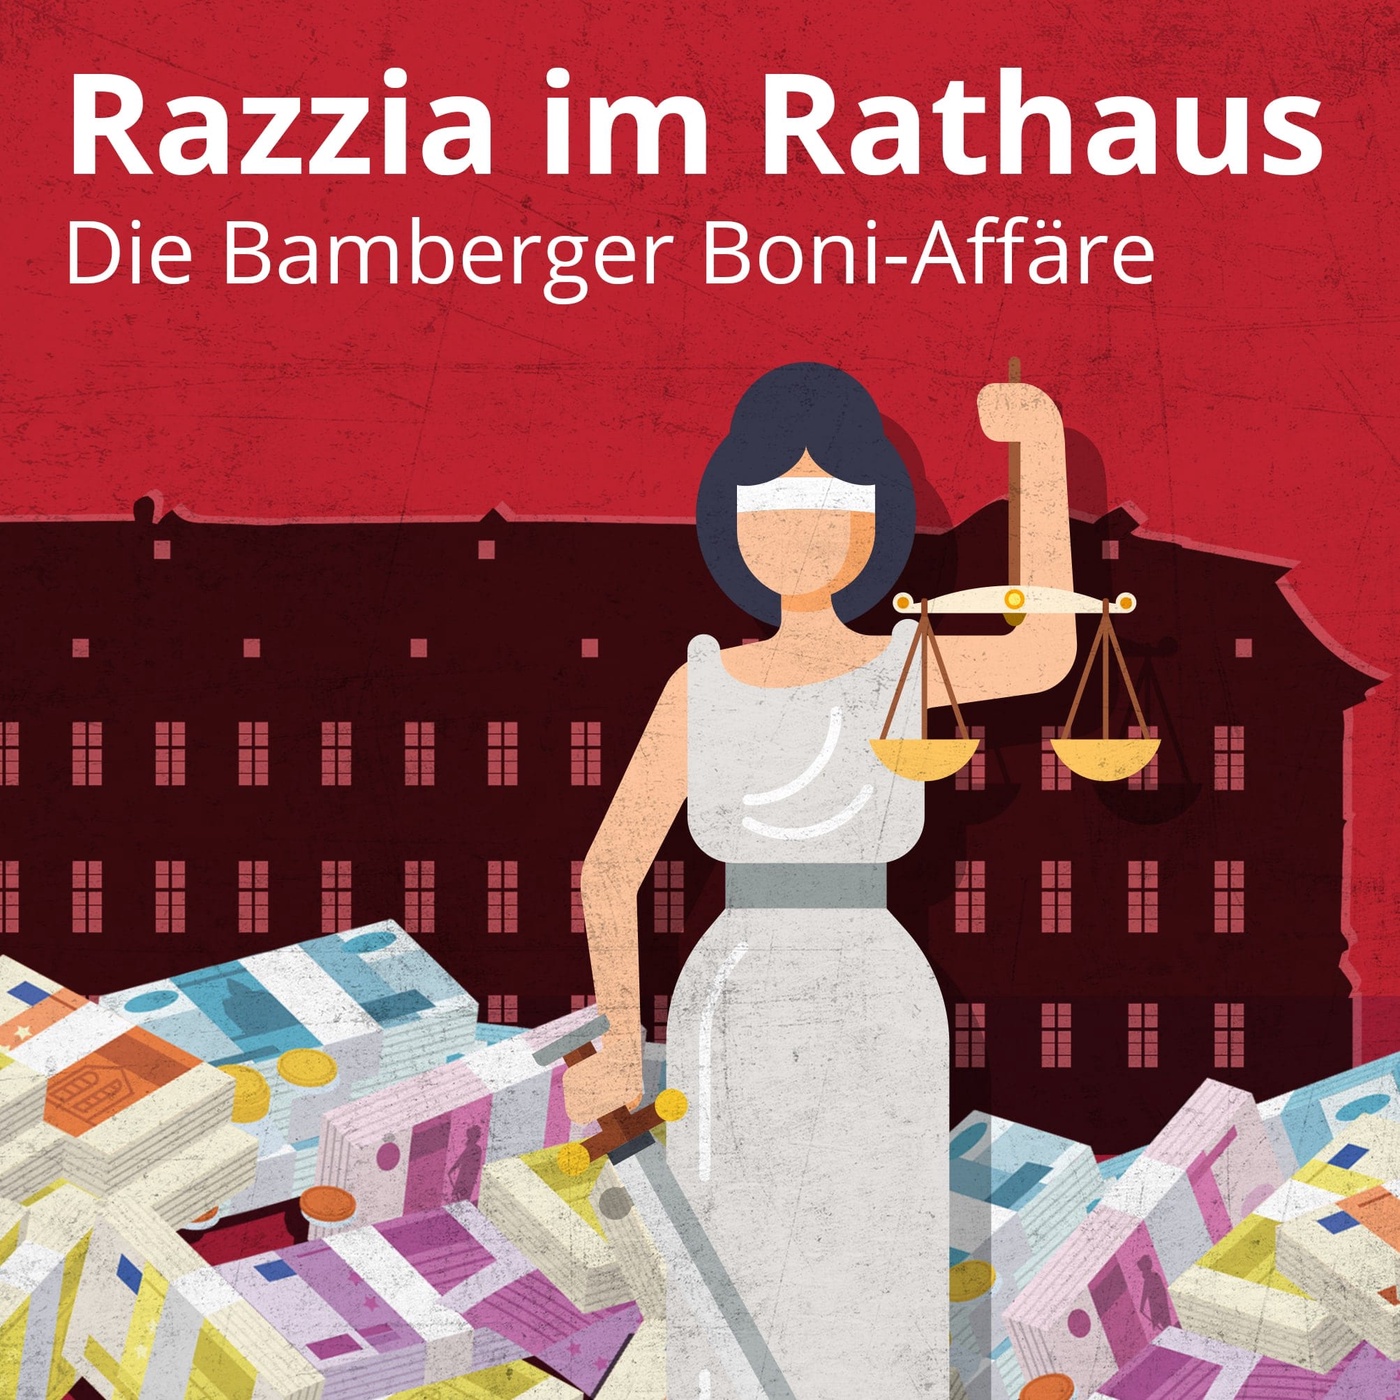 Folge 4: Razzia im Bamberger Rathaus